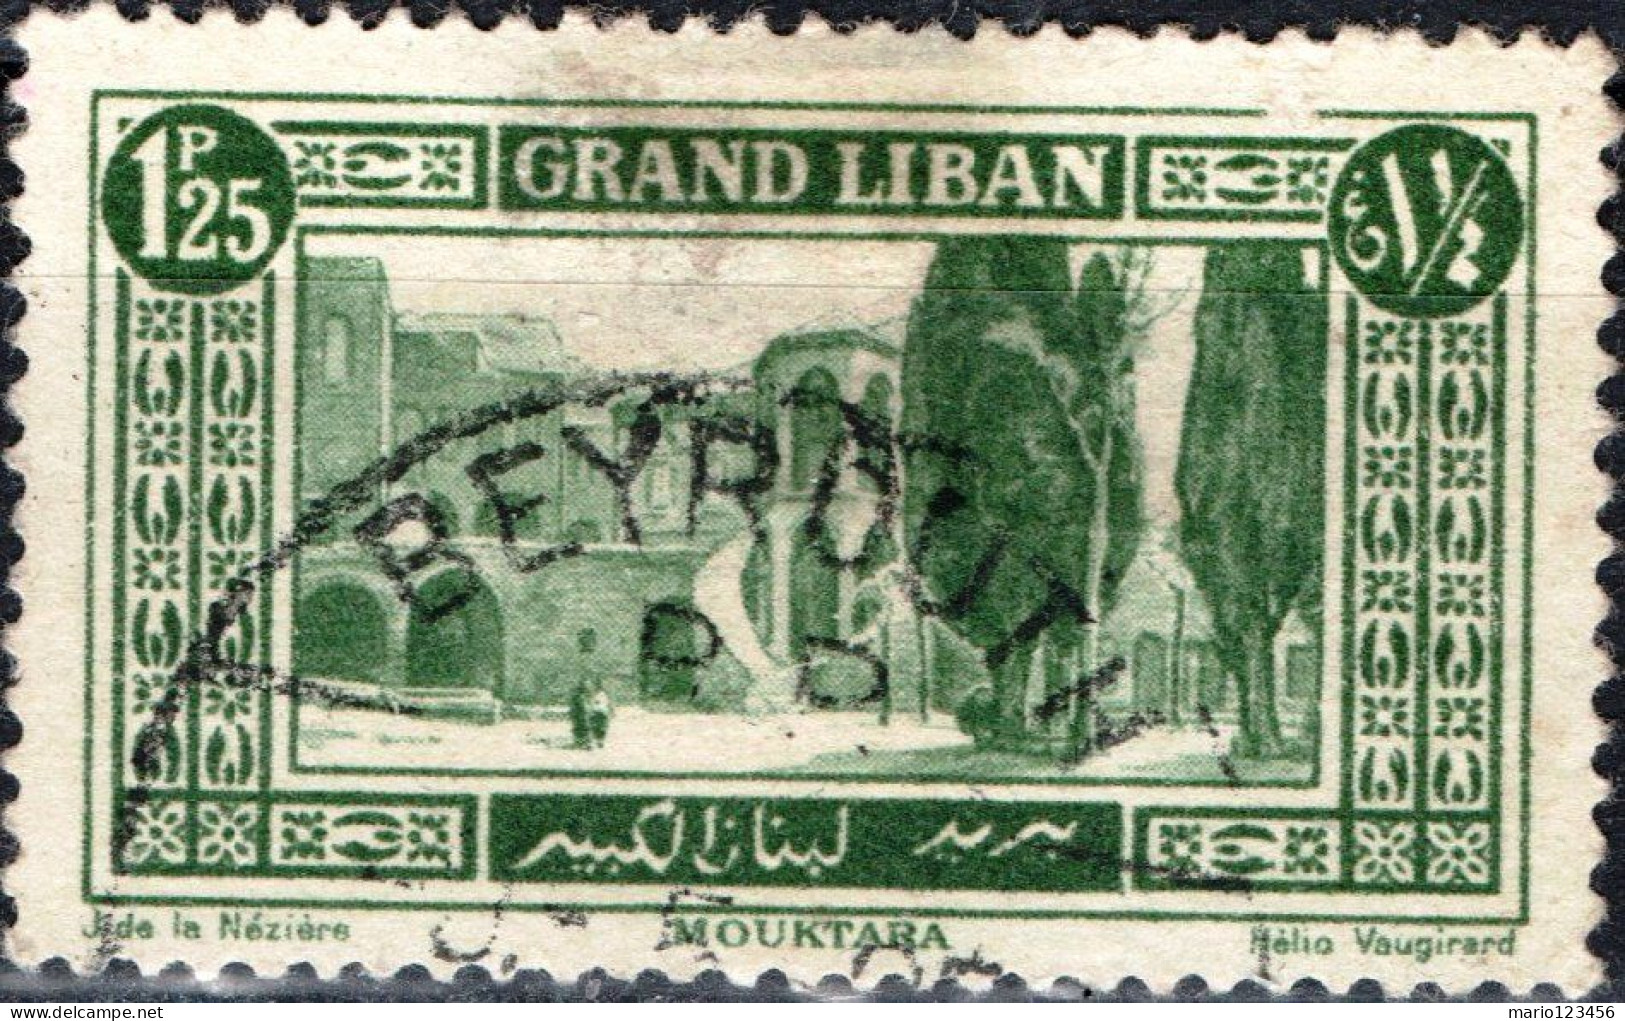 LIBANO, LEBANON, PAESAGGI, LANDSCAPES, 1925, USATI Scott:LB 55, Yt:FR-LB 55 - Used Stamps